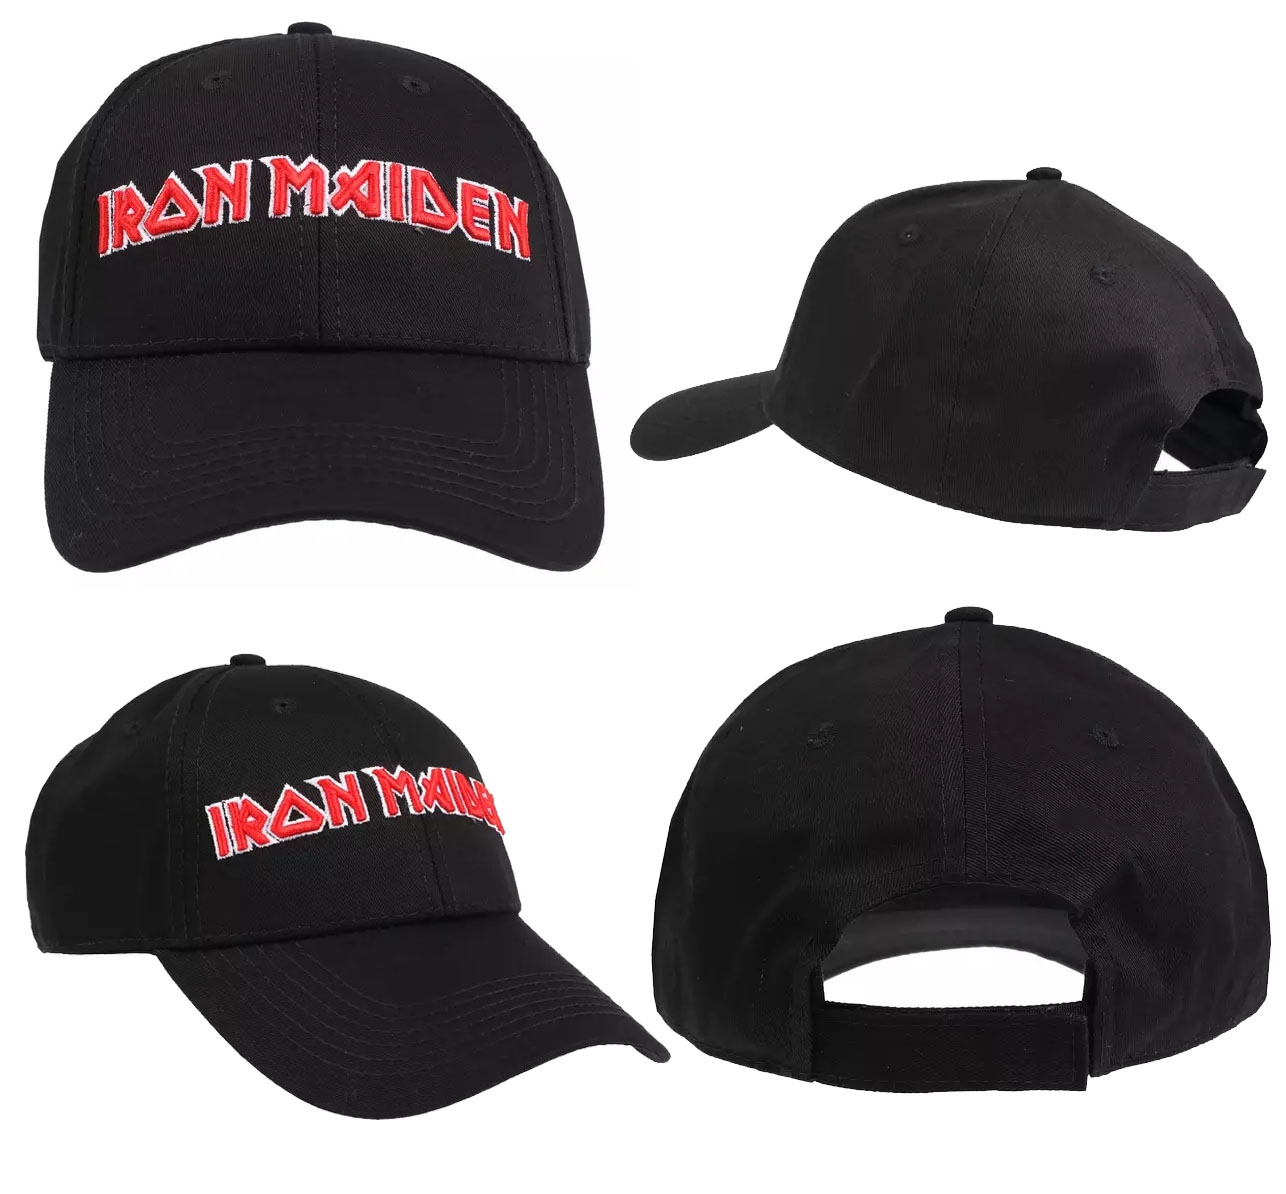 IRON MAIDEN logo BASEBALL CAP - Unkind - Merchandise Oficial - Produtos